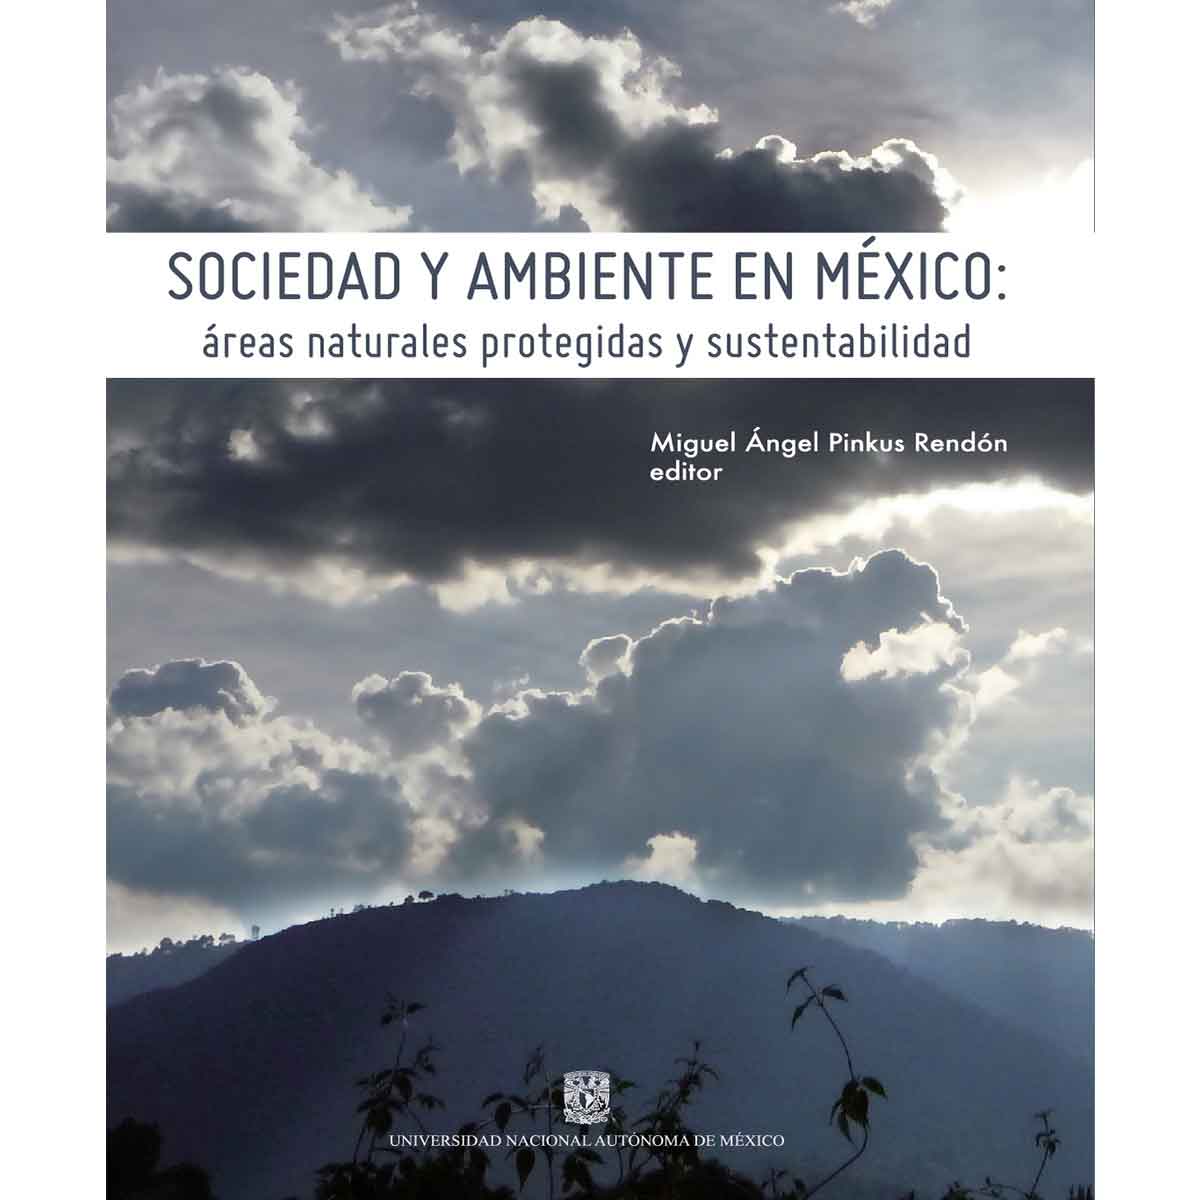 SOCIEDAD Y AMBIENTE EN MÉXICO: ÁREAS NATURALES PROTEGIDAS Y SUSTENTABILIDAD